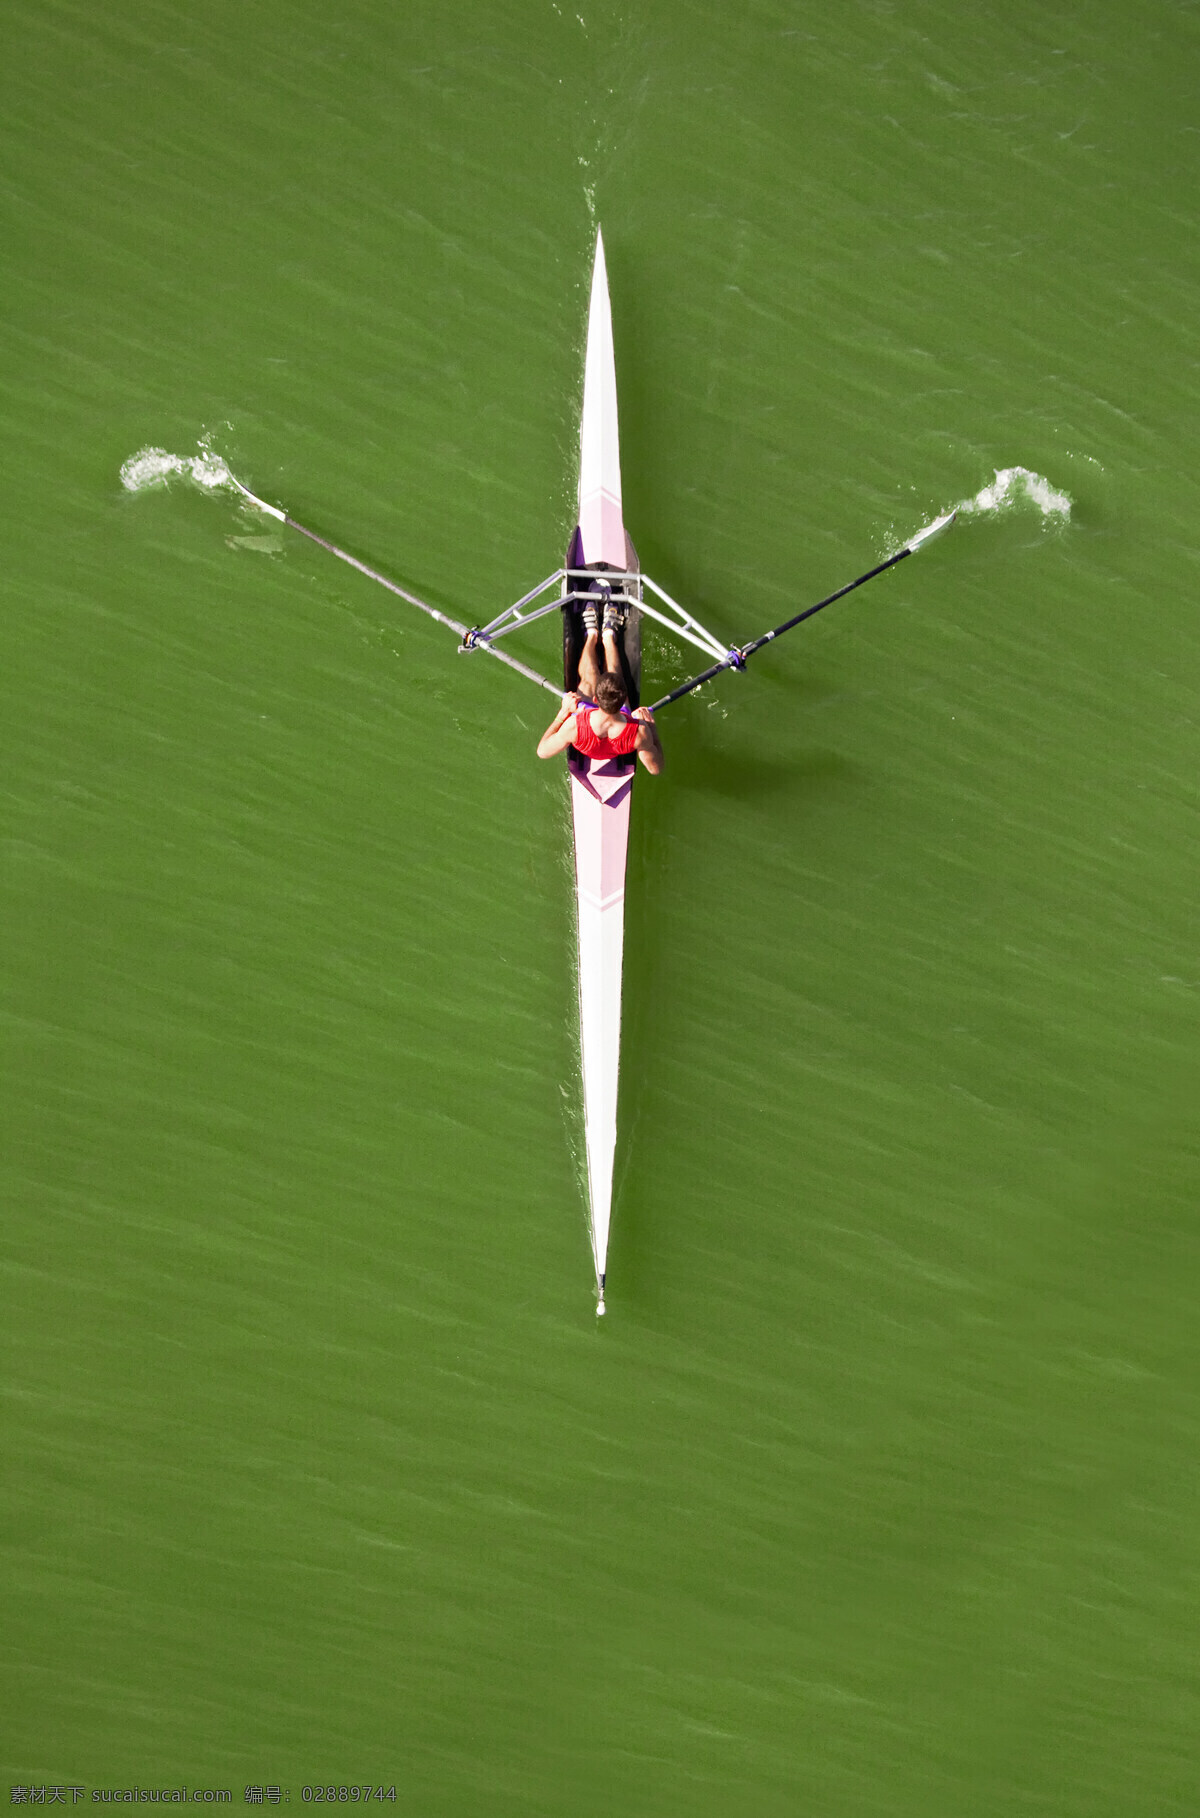 体育竞技摄影 体育竞技 划船 水上运动 运动 运动员 人物 体育运动 生活百科 绿色